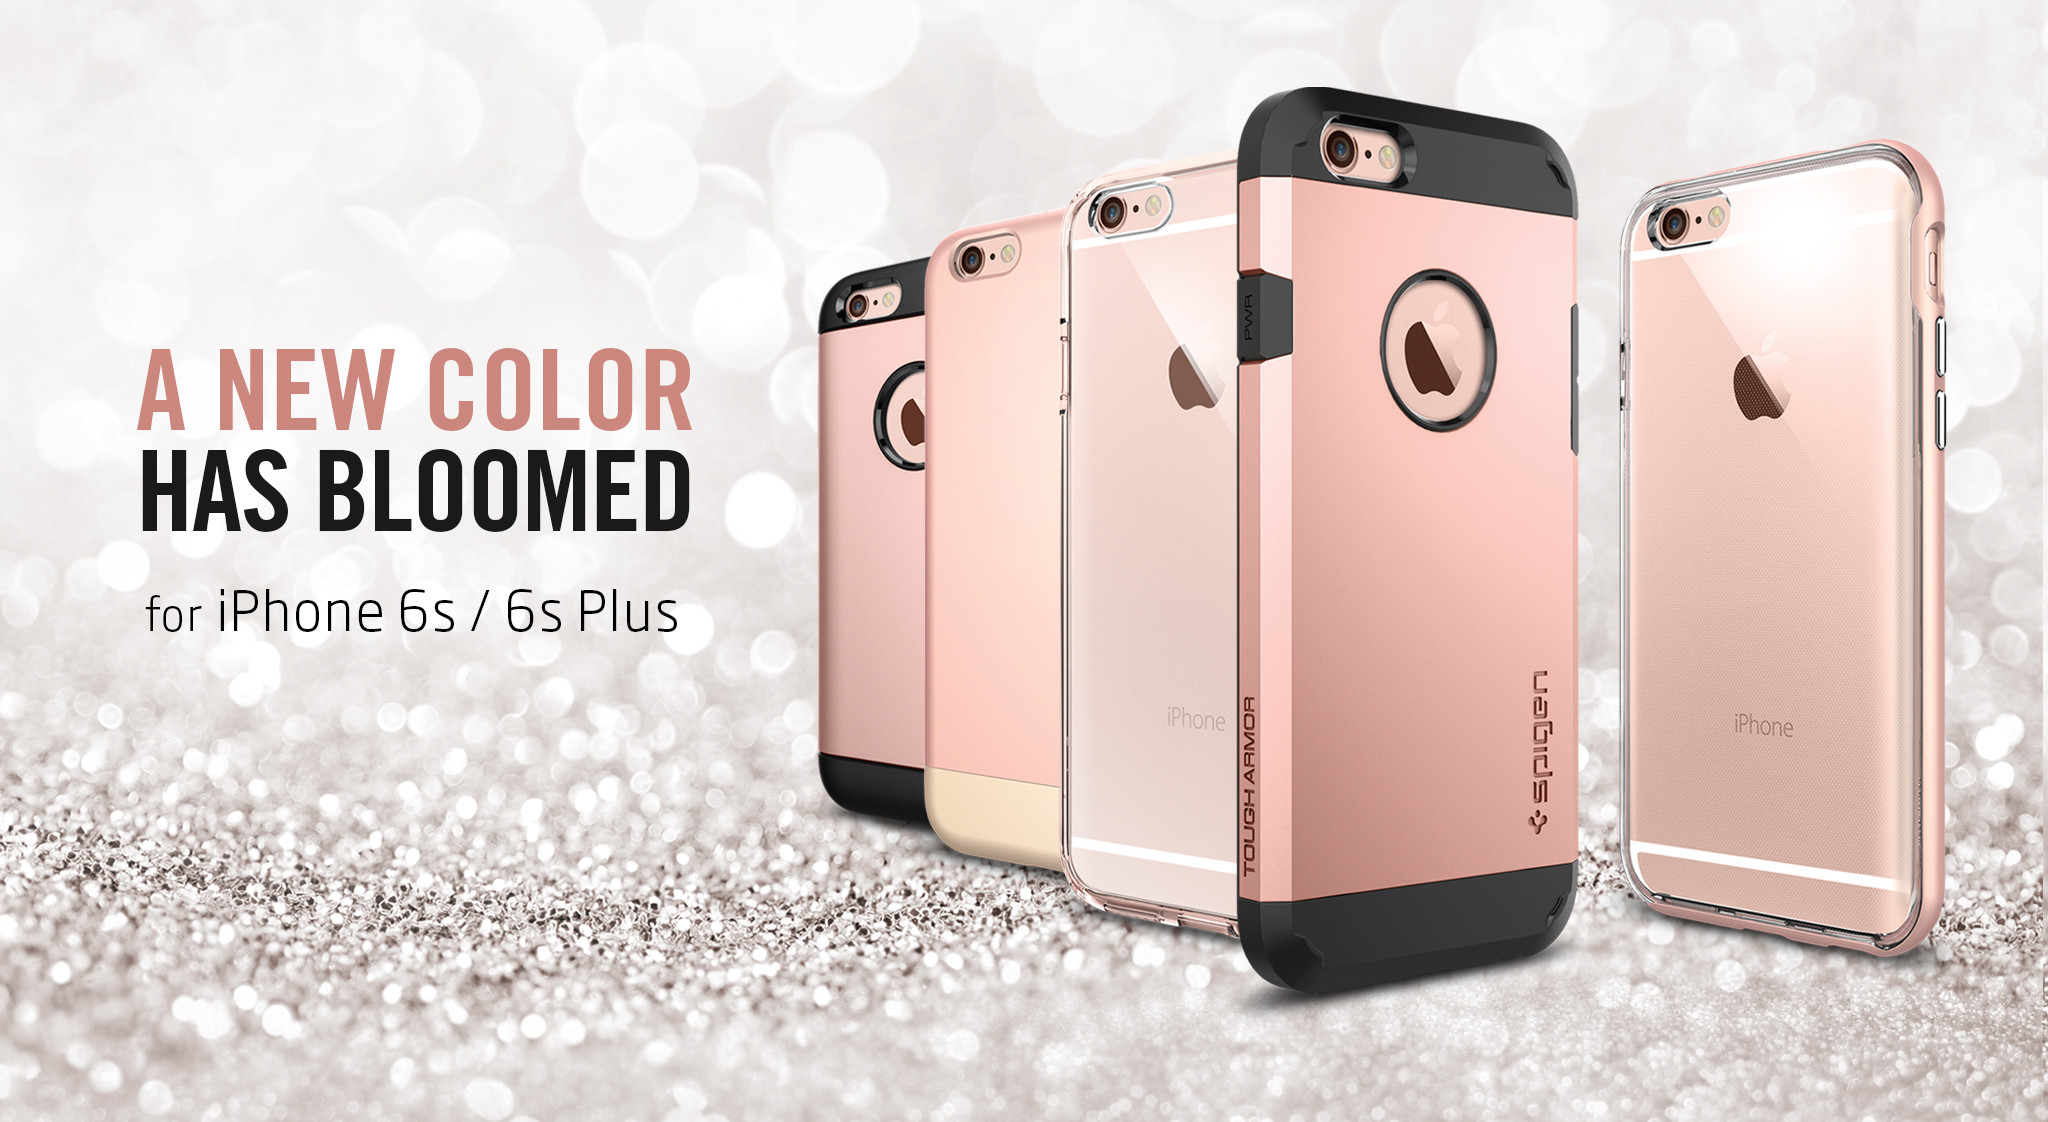 มาแน่นอน สำหรับสีใหม่ Rose Gold สำหรับ iPhone 6s และ Apple iPhone 6s Plus ฟรุ้งฟริ้งสุดๆ